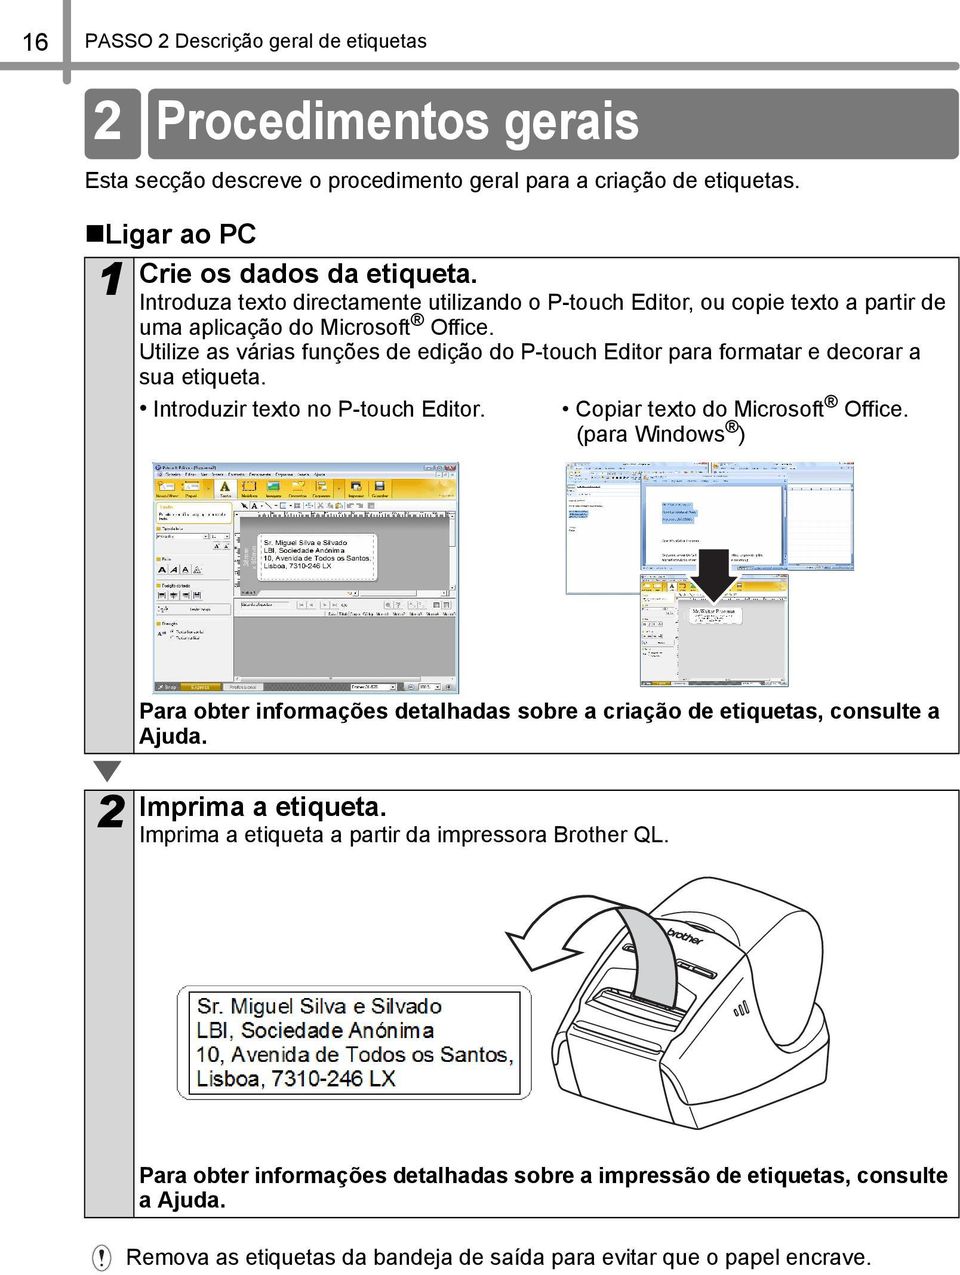 Utilize as várias funções de edição do P-touch Editor para formatar e decorar a sua etiqueta. Introduzir texto no P-touch Editor. Copiar texto do Microsoft Office.